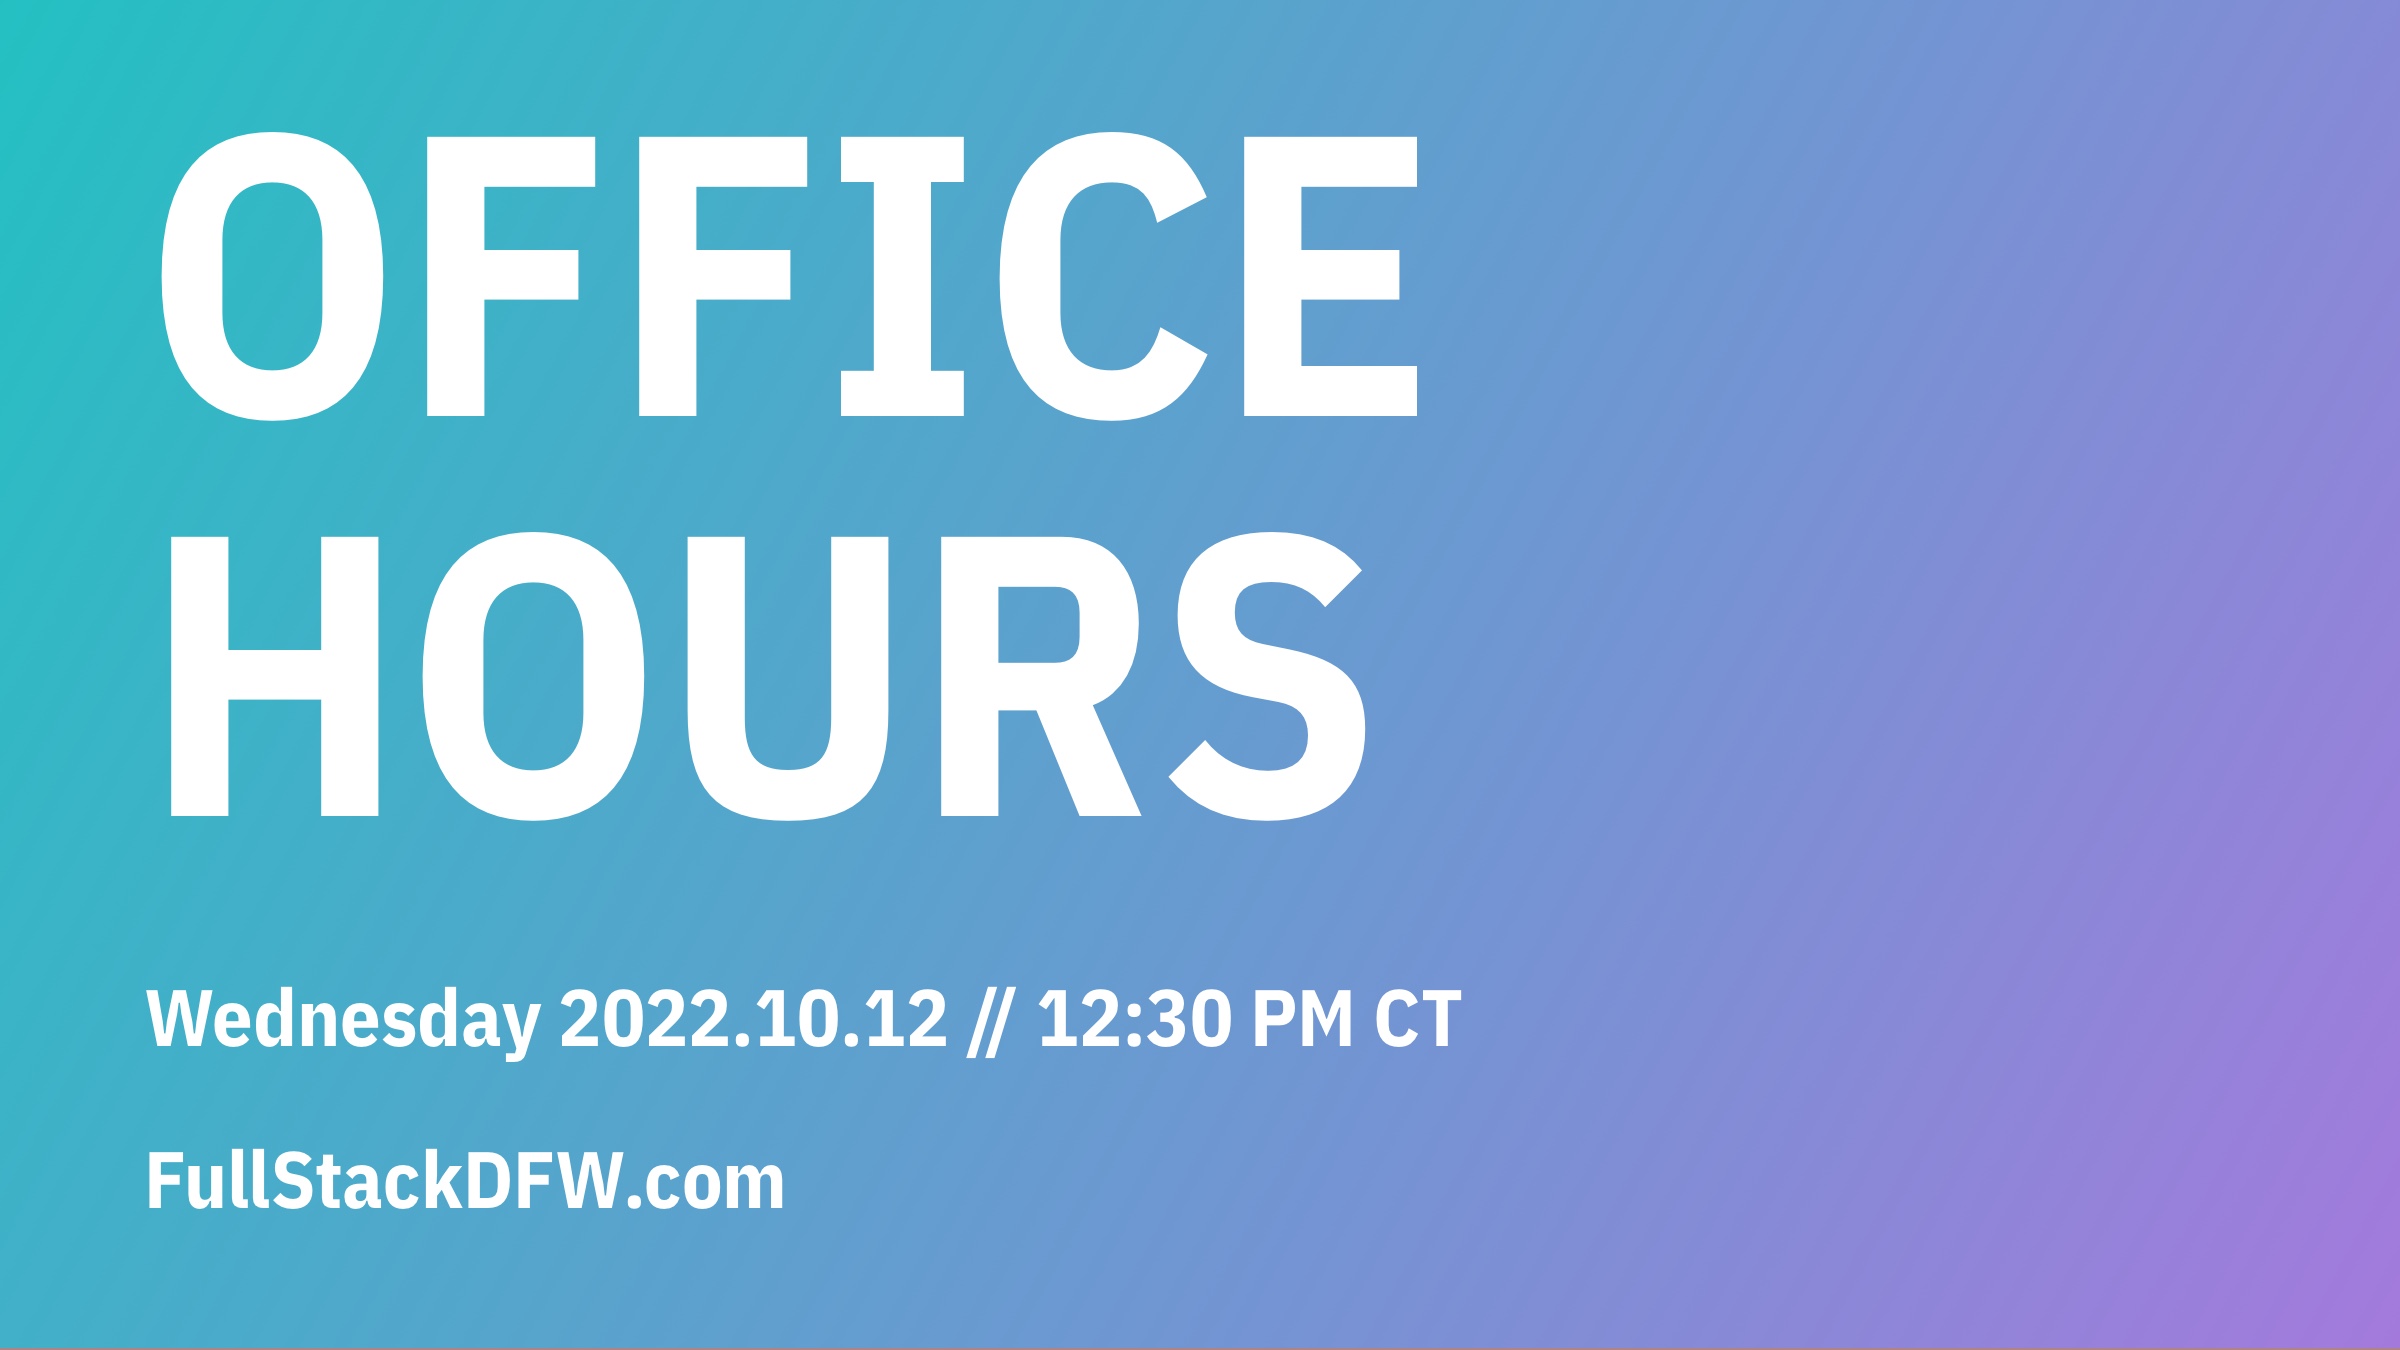 office hours flier